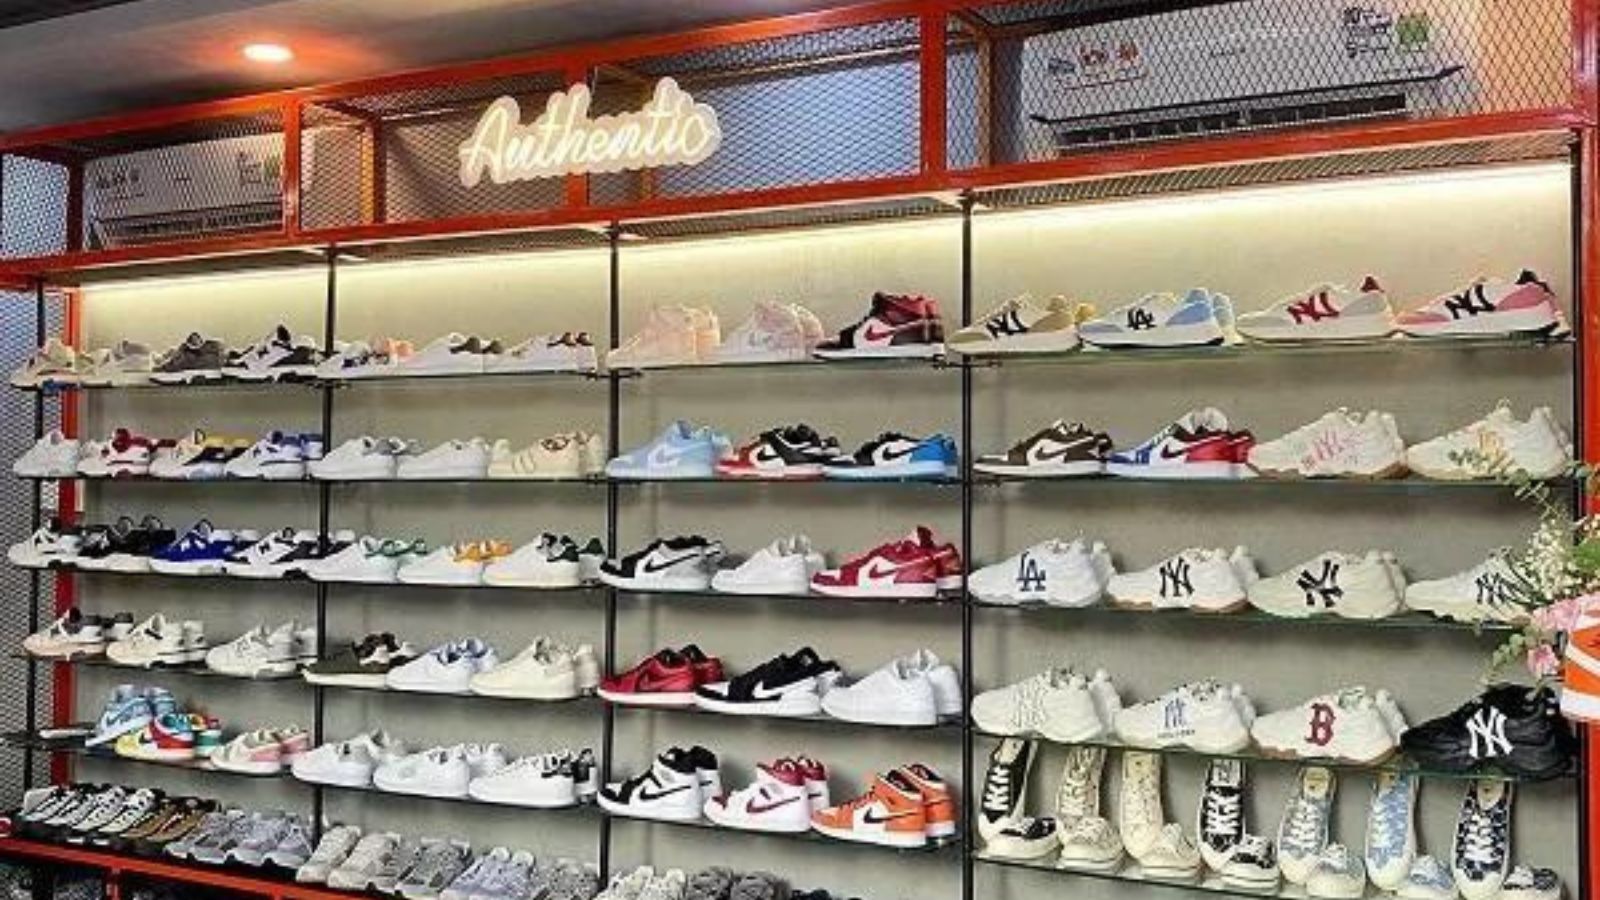 Bèo store - Cửa hàng bán giày secondhand Sài Gòn nổi tiếng